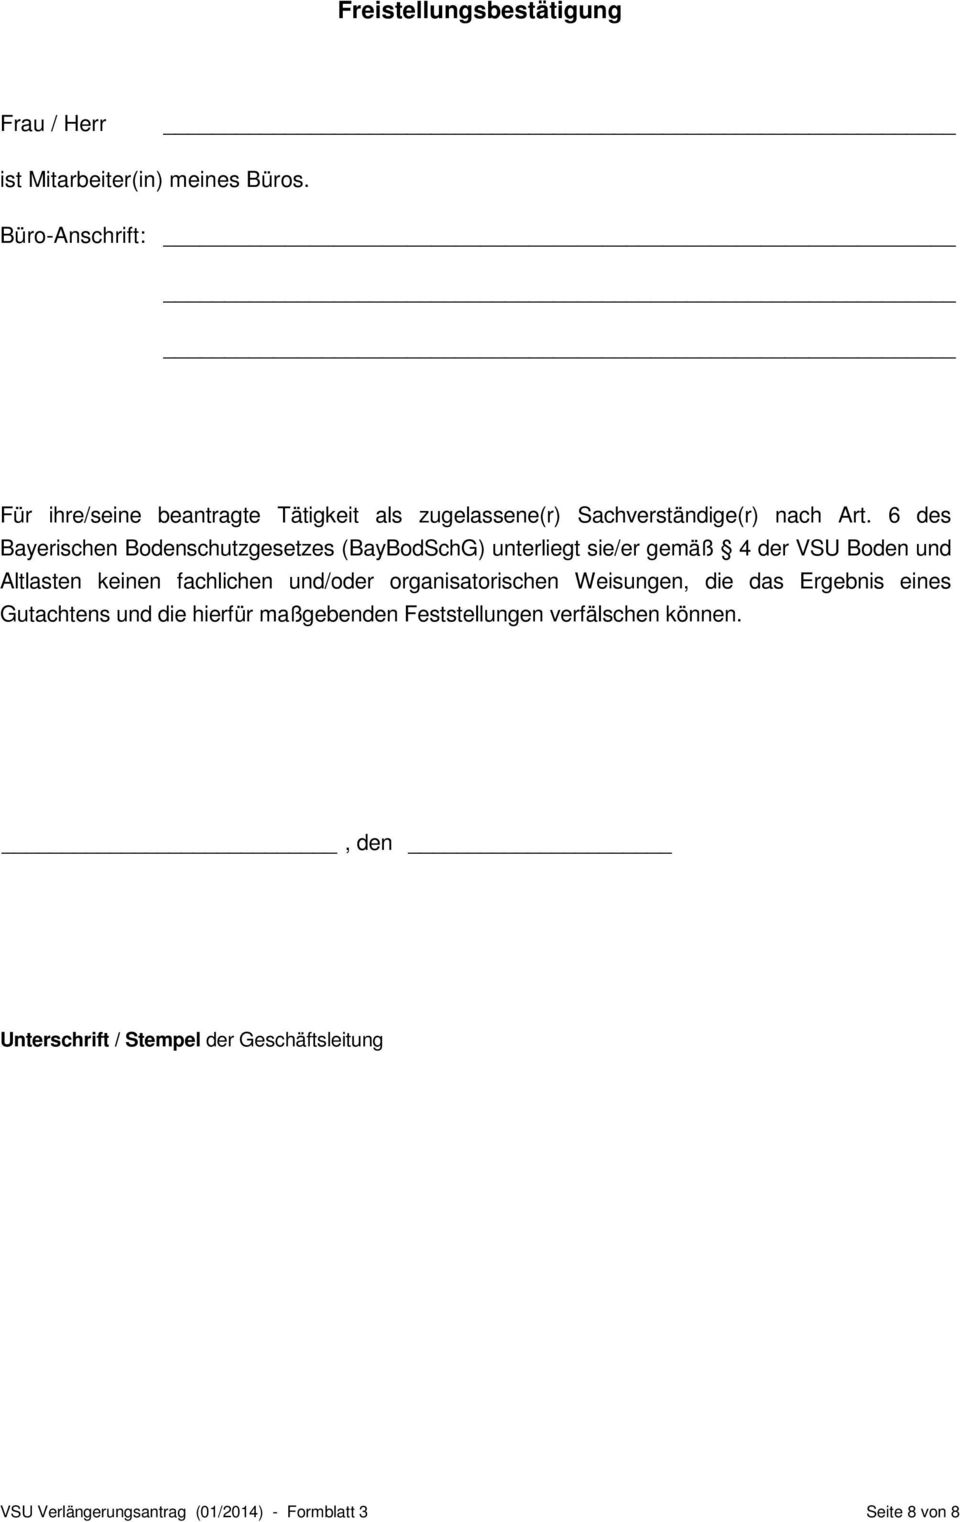 6 des Bayerischen Bodenschutzgesetzes (BayBodSchG) unterliegt sie/er gemäß 4 der VSU Boden und Altlasten keinen fachlichen und/oder